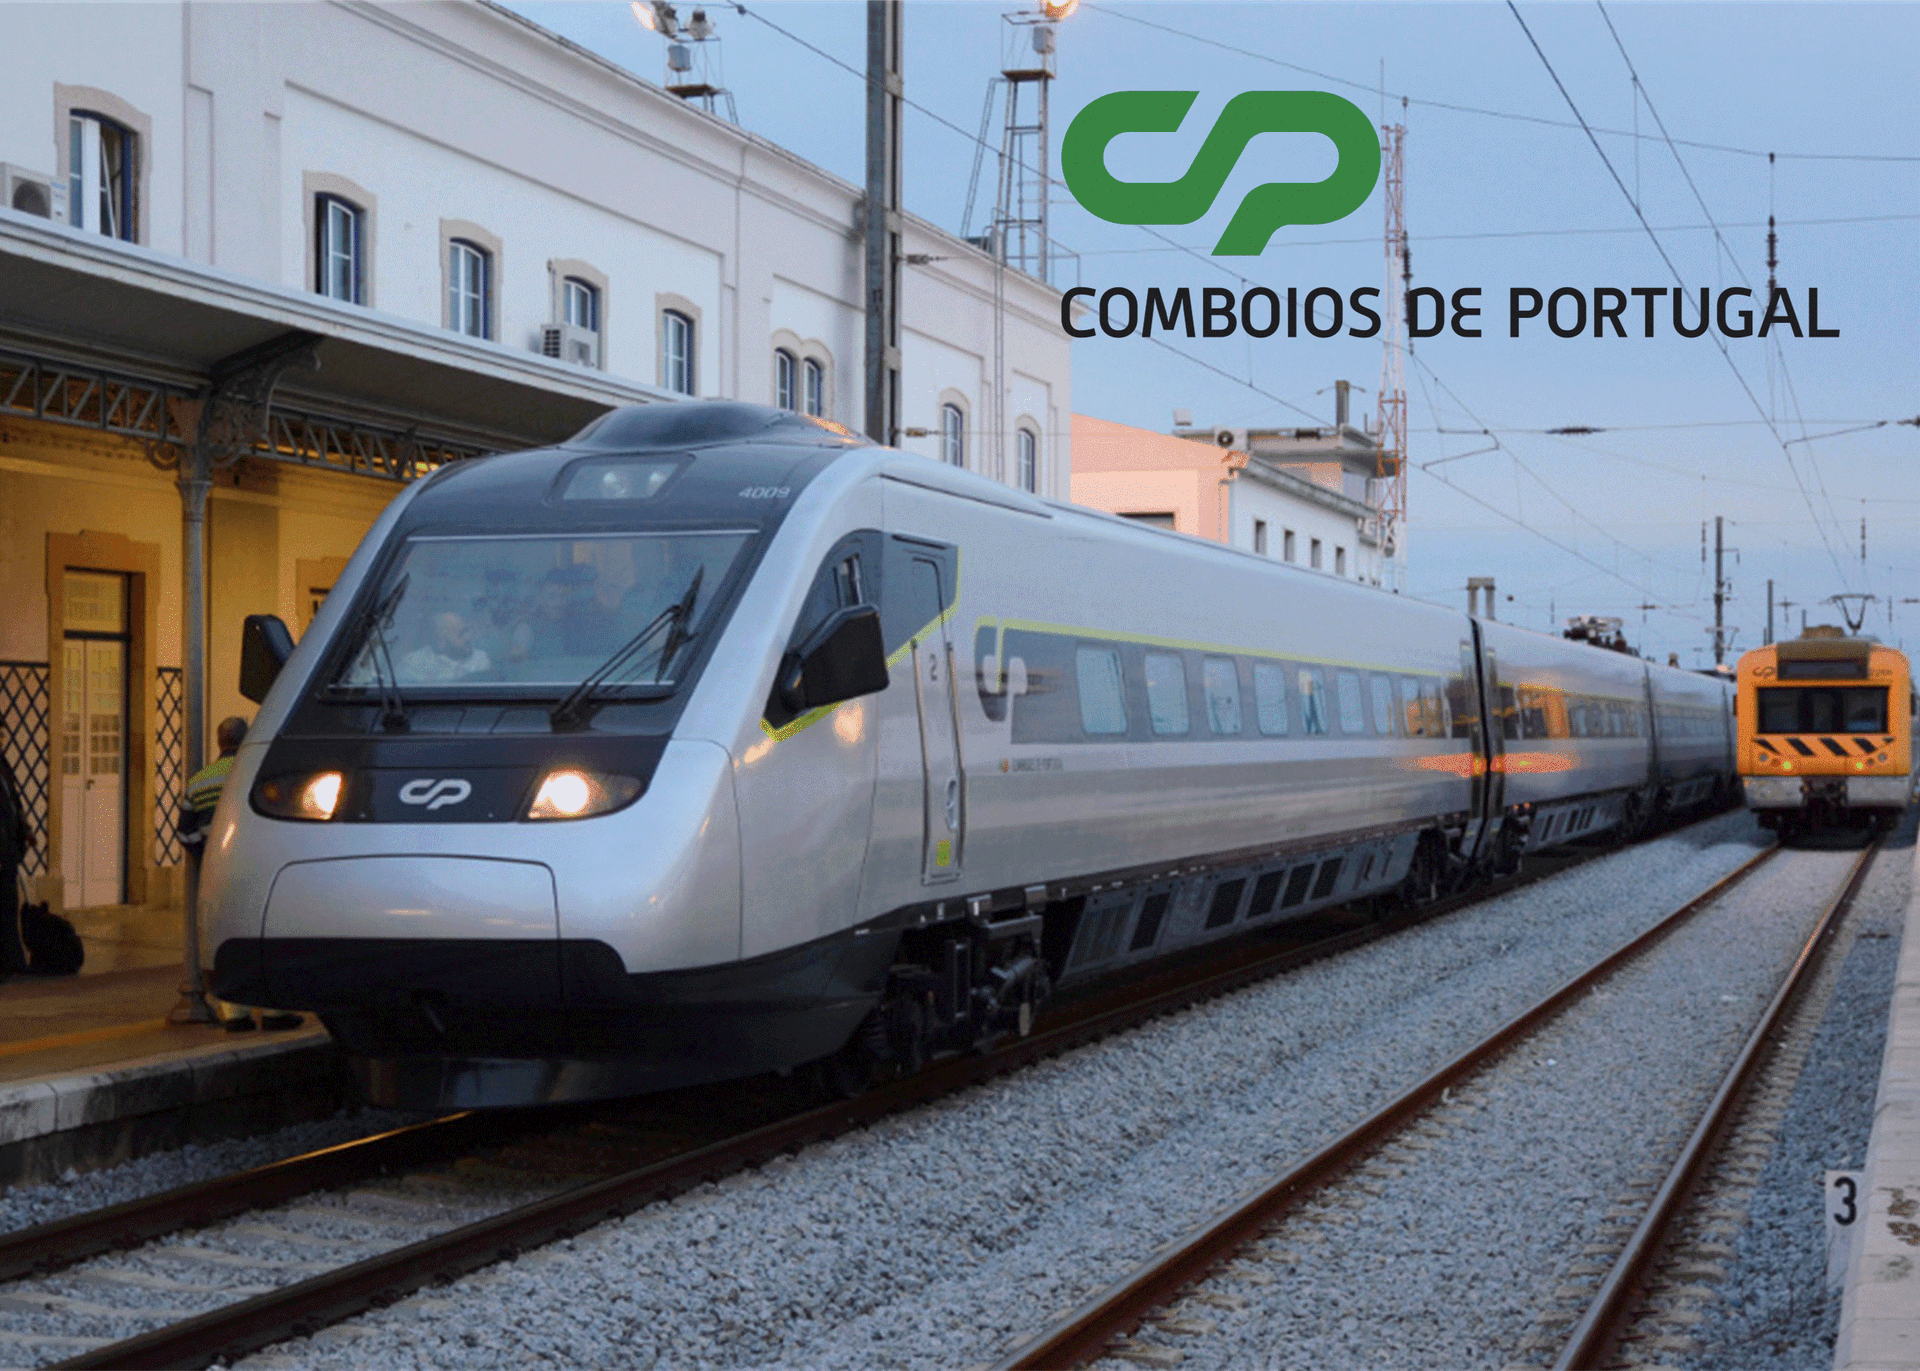 cp comboios de portugal